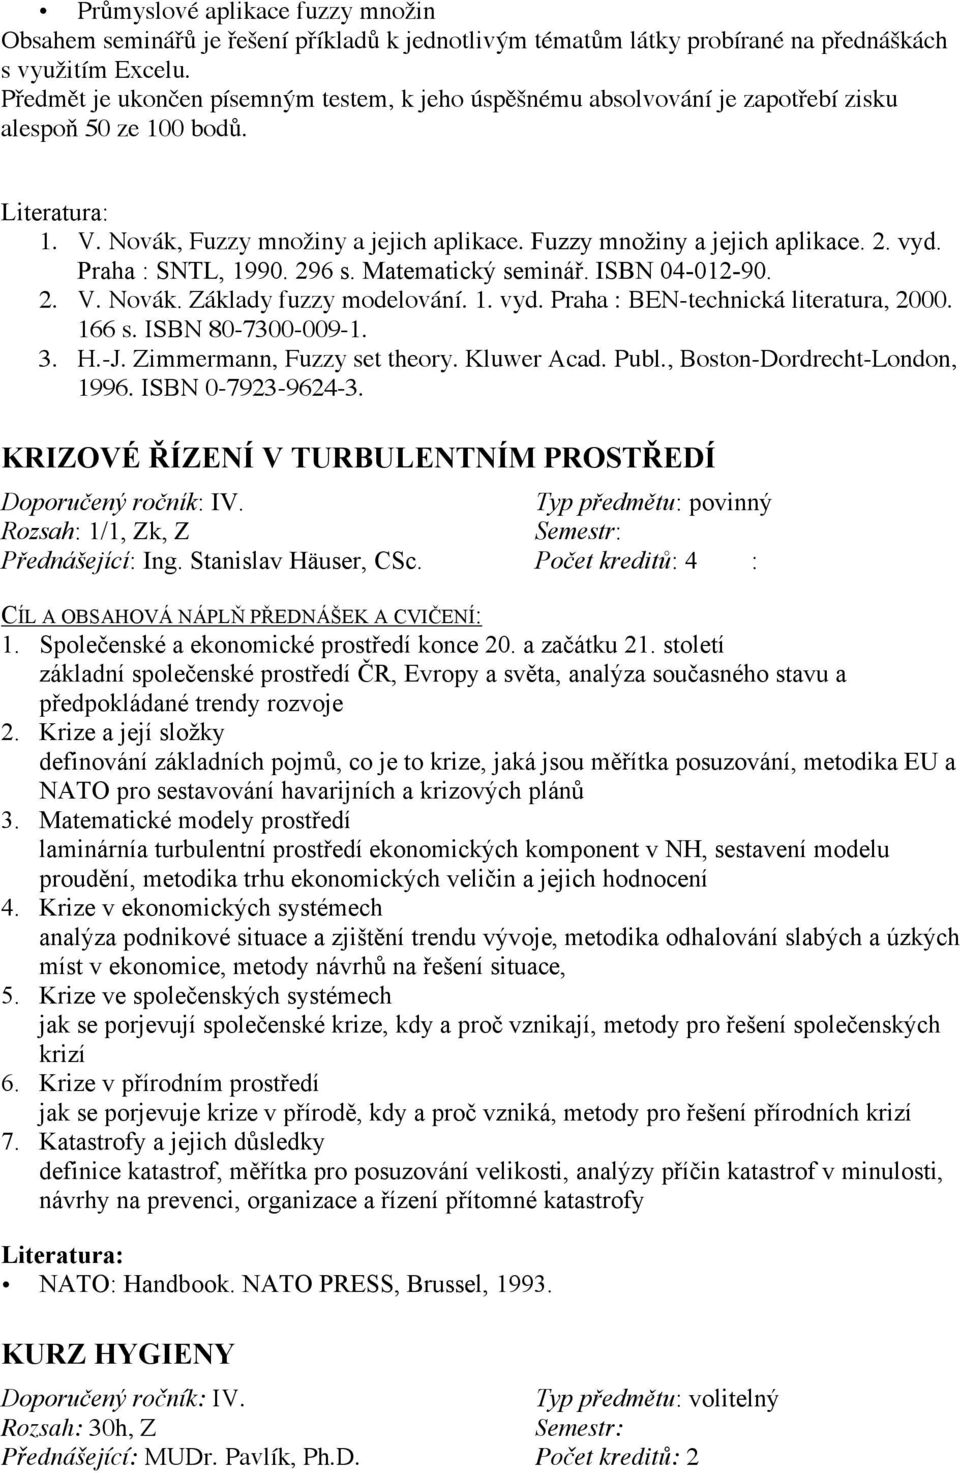 Praha : SNTL, 1990. 296 s. Matematický seminář. ISBN 04-012-90. 2. V. Novák. Základy fuzzy modelování. 1. vyd. Praha : BEN-technická literatura, 2000. 166 s. ISBN 80-7300-009-1. 3. H.-J.